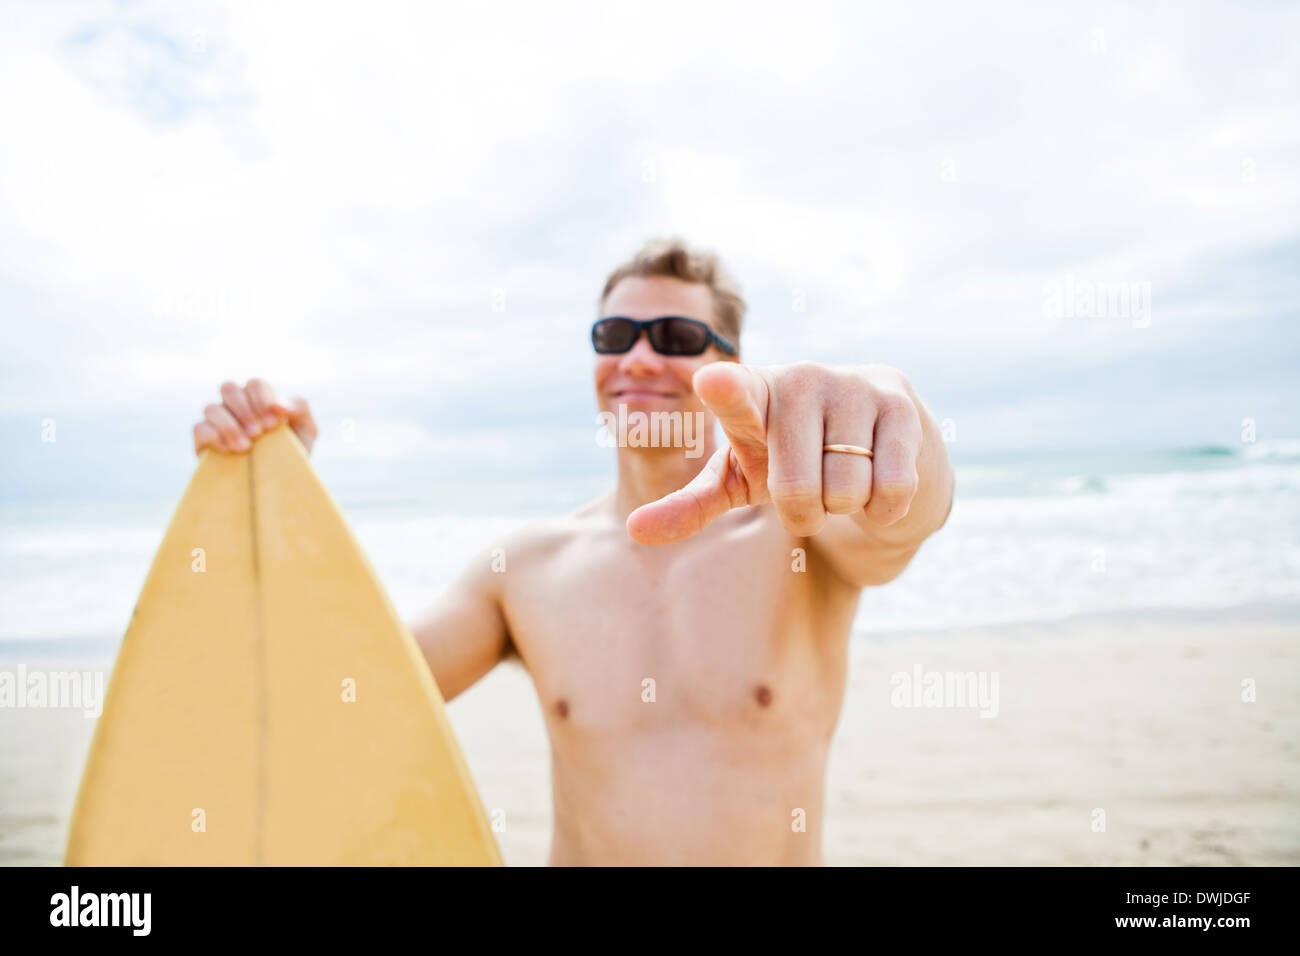 Zeigefinger der verheirateten lächelnd männliche Surfer mit Surfbrett am Strand im Fokus Stockfoto